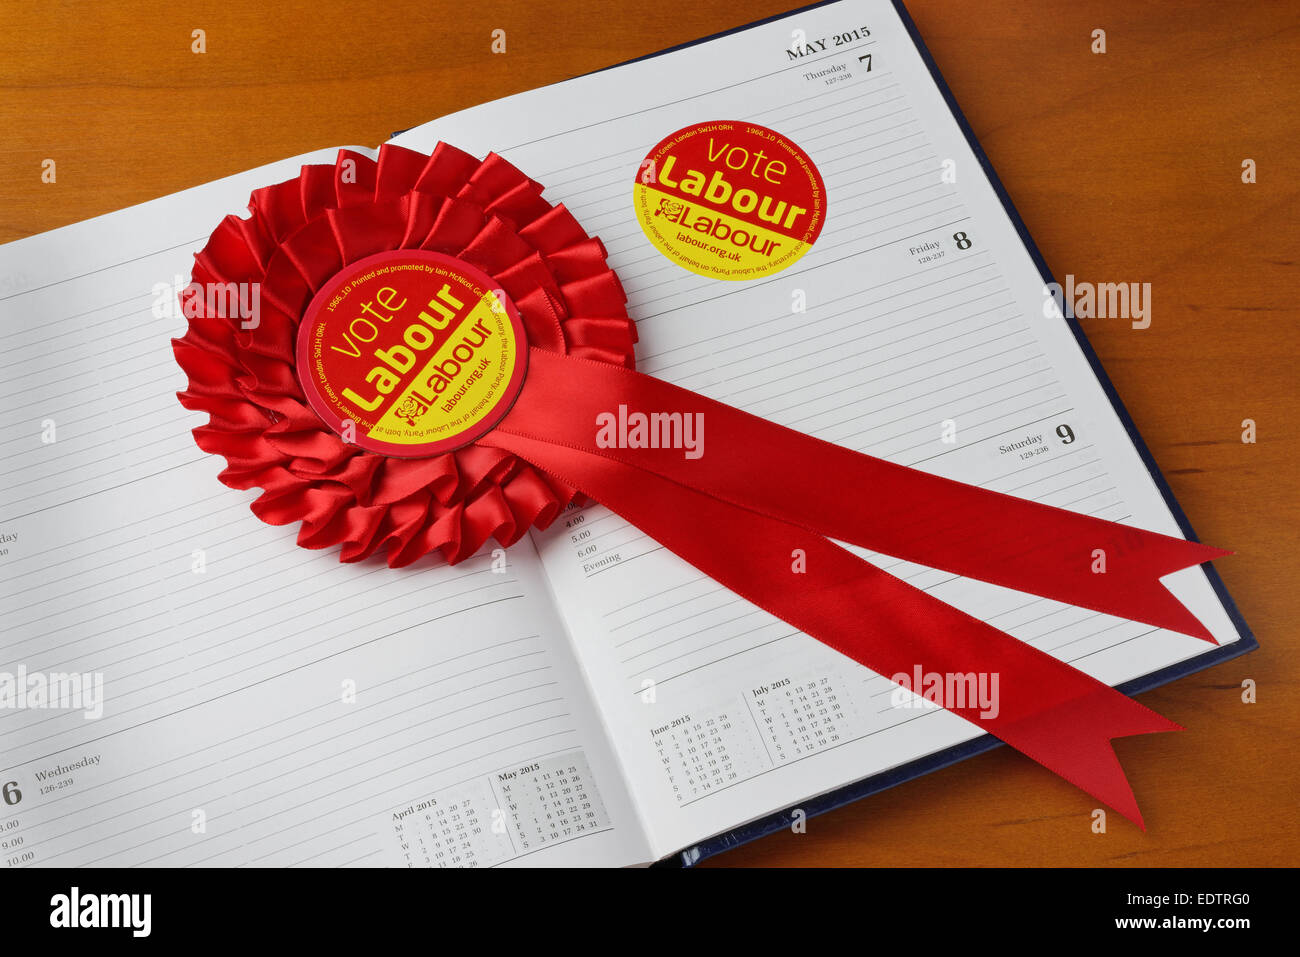 Abstimmung Labour Aufkleber und Rosette auf ein Tagebuch auf General Election Day, 7. Mai. 2015. Wahl Konzept. Stockfoto